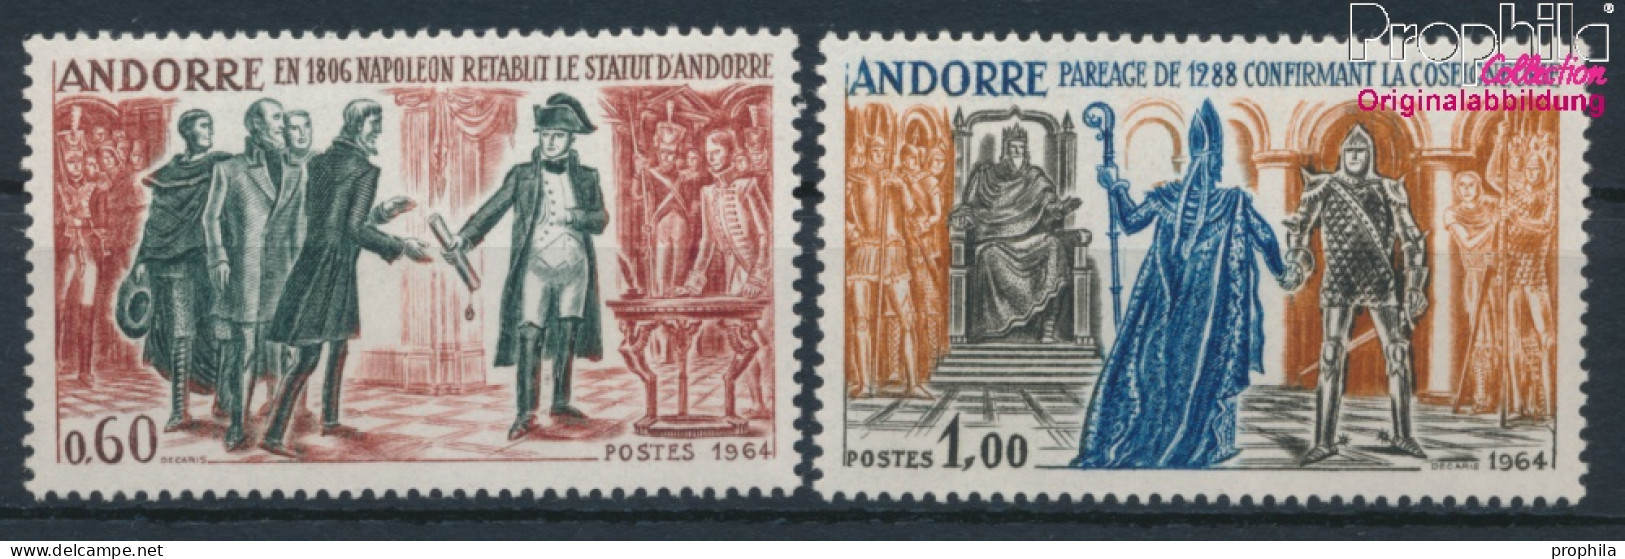 Andorra - Französische Post 183-184 (kompl.Ausg.) Postfrisch 1964 Geschichtsbilder (10368755 - Neufs